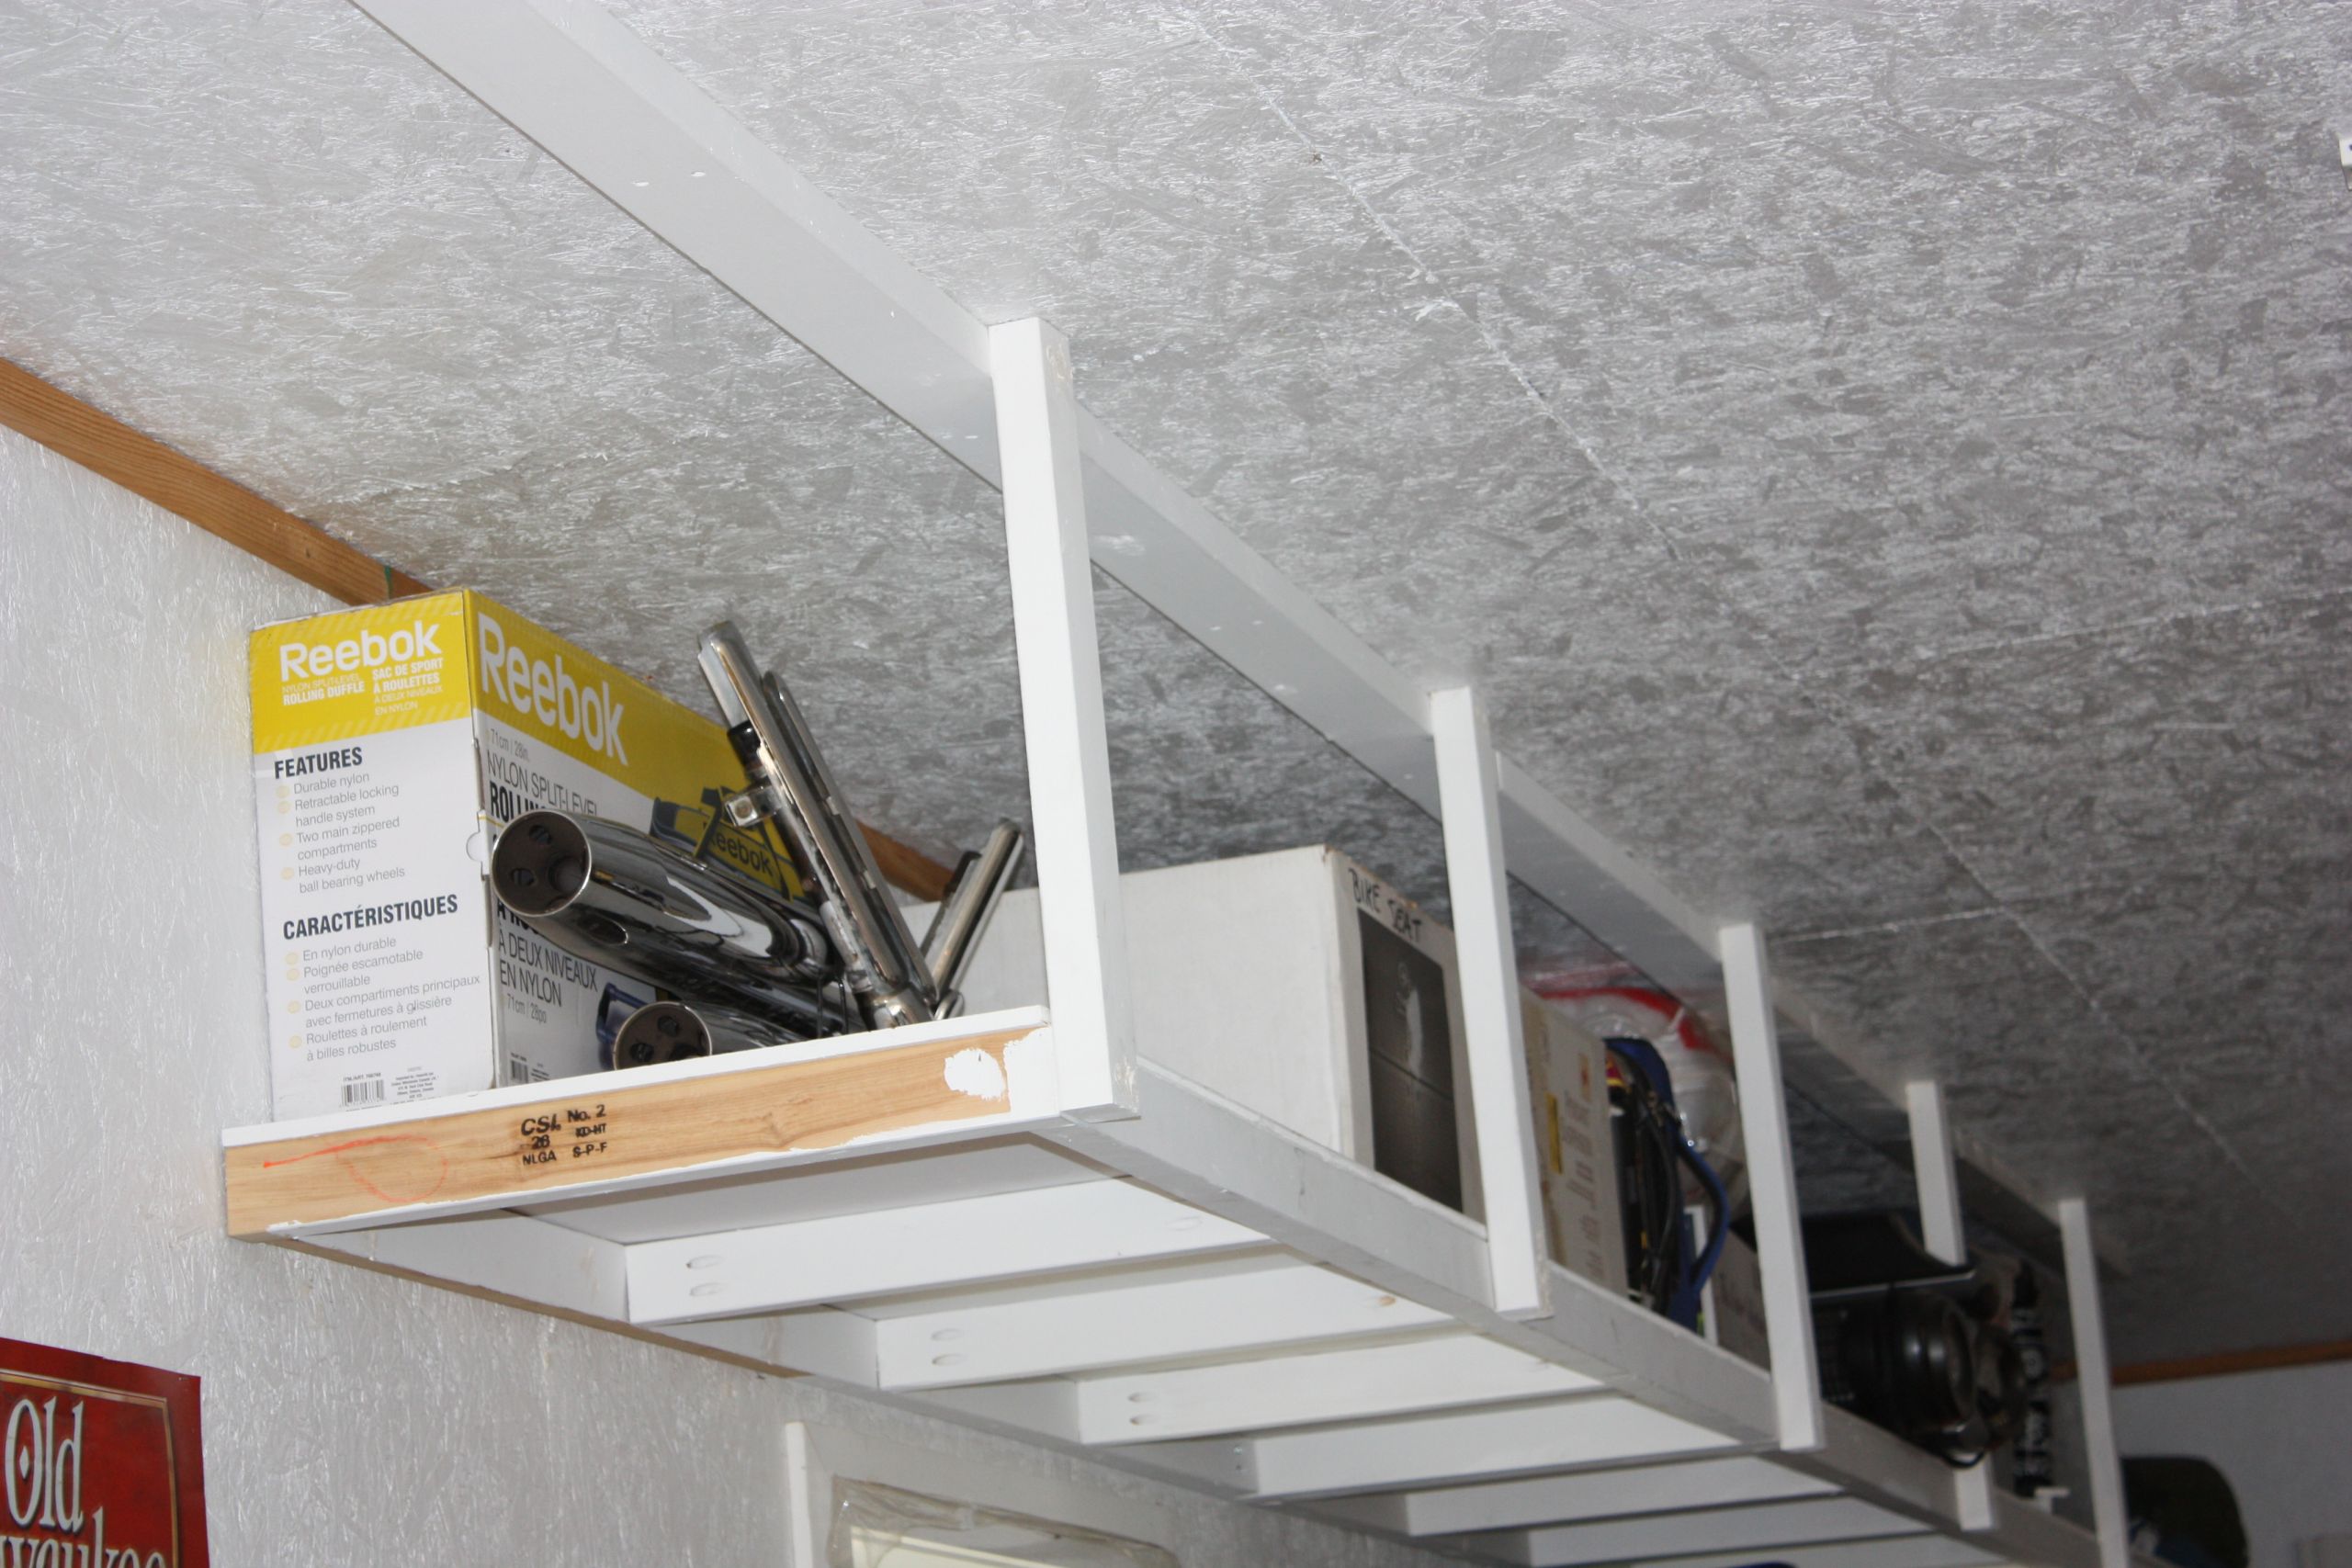 DIY Overhead Garage Storage Plans
 Ana White